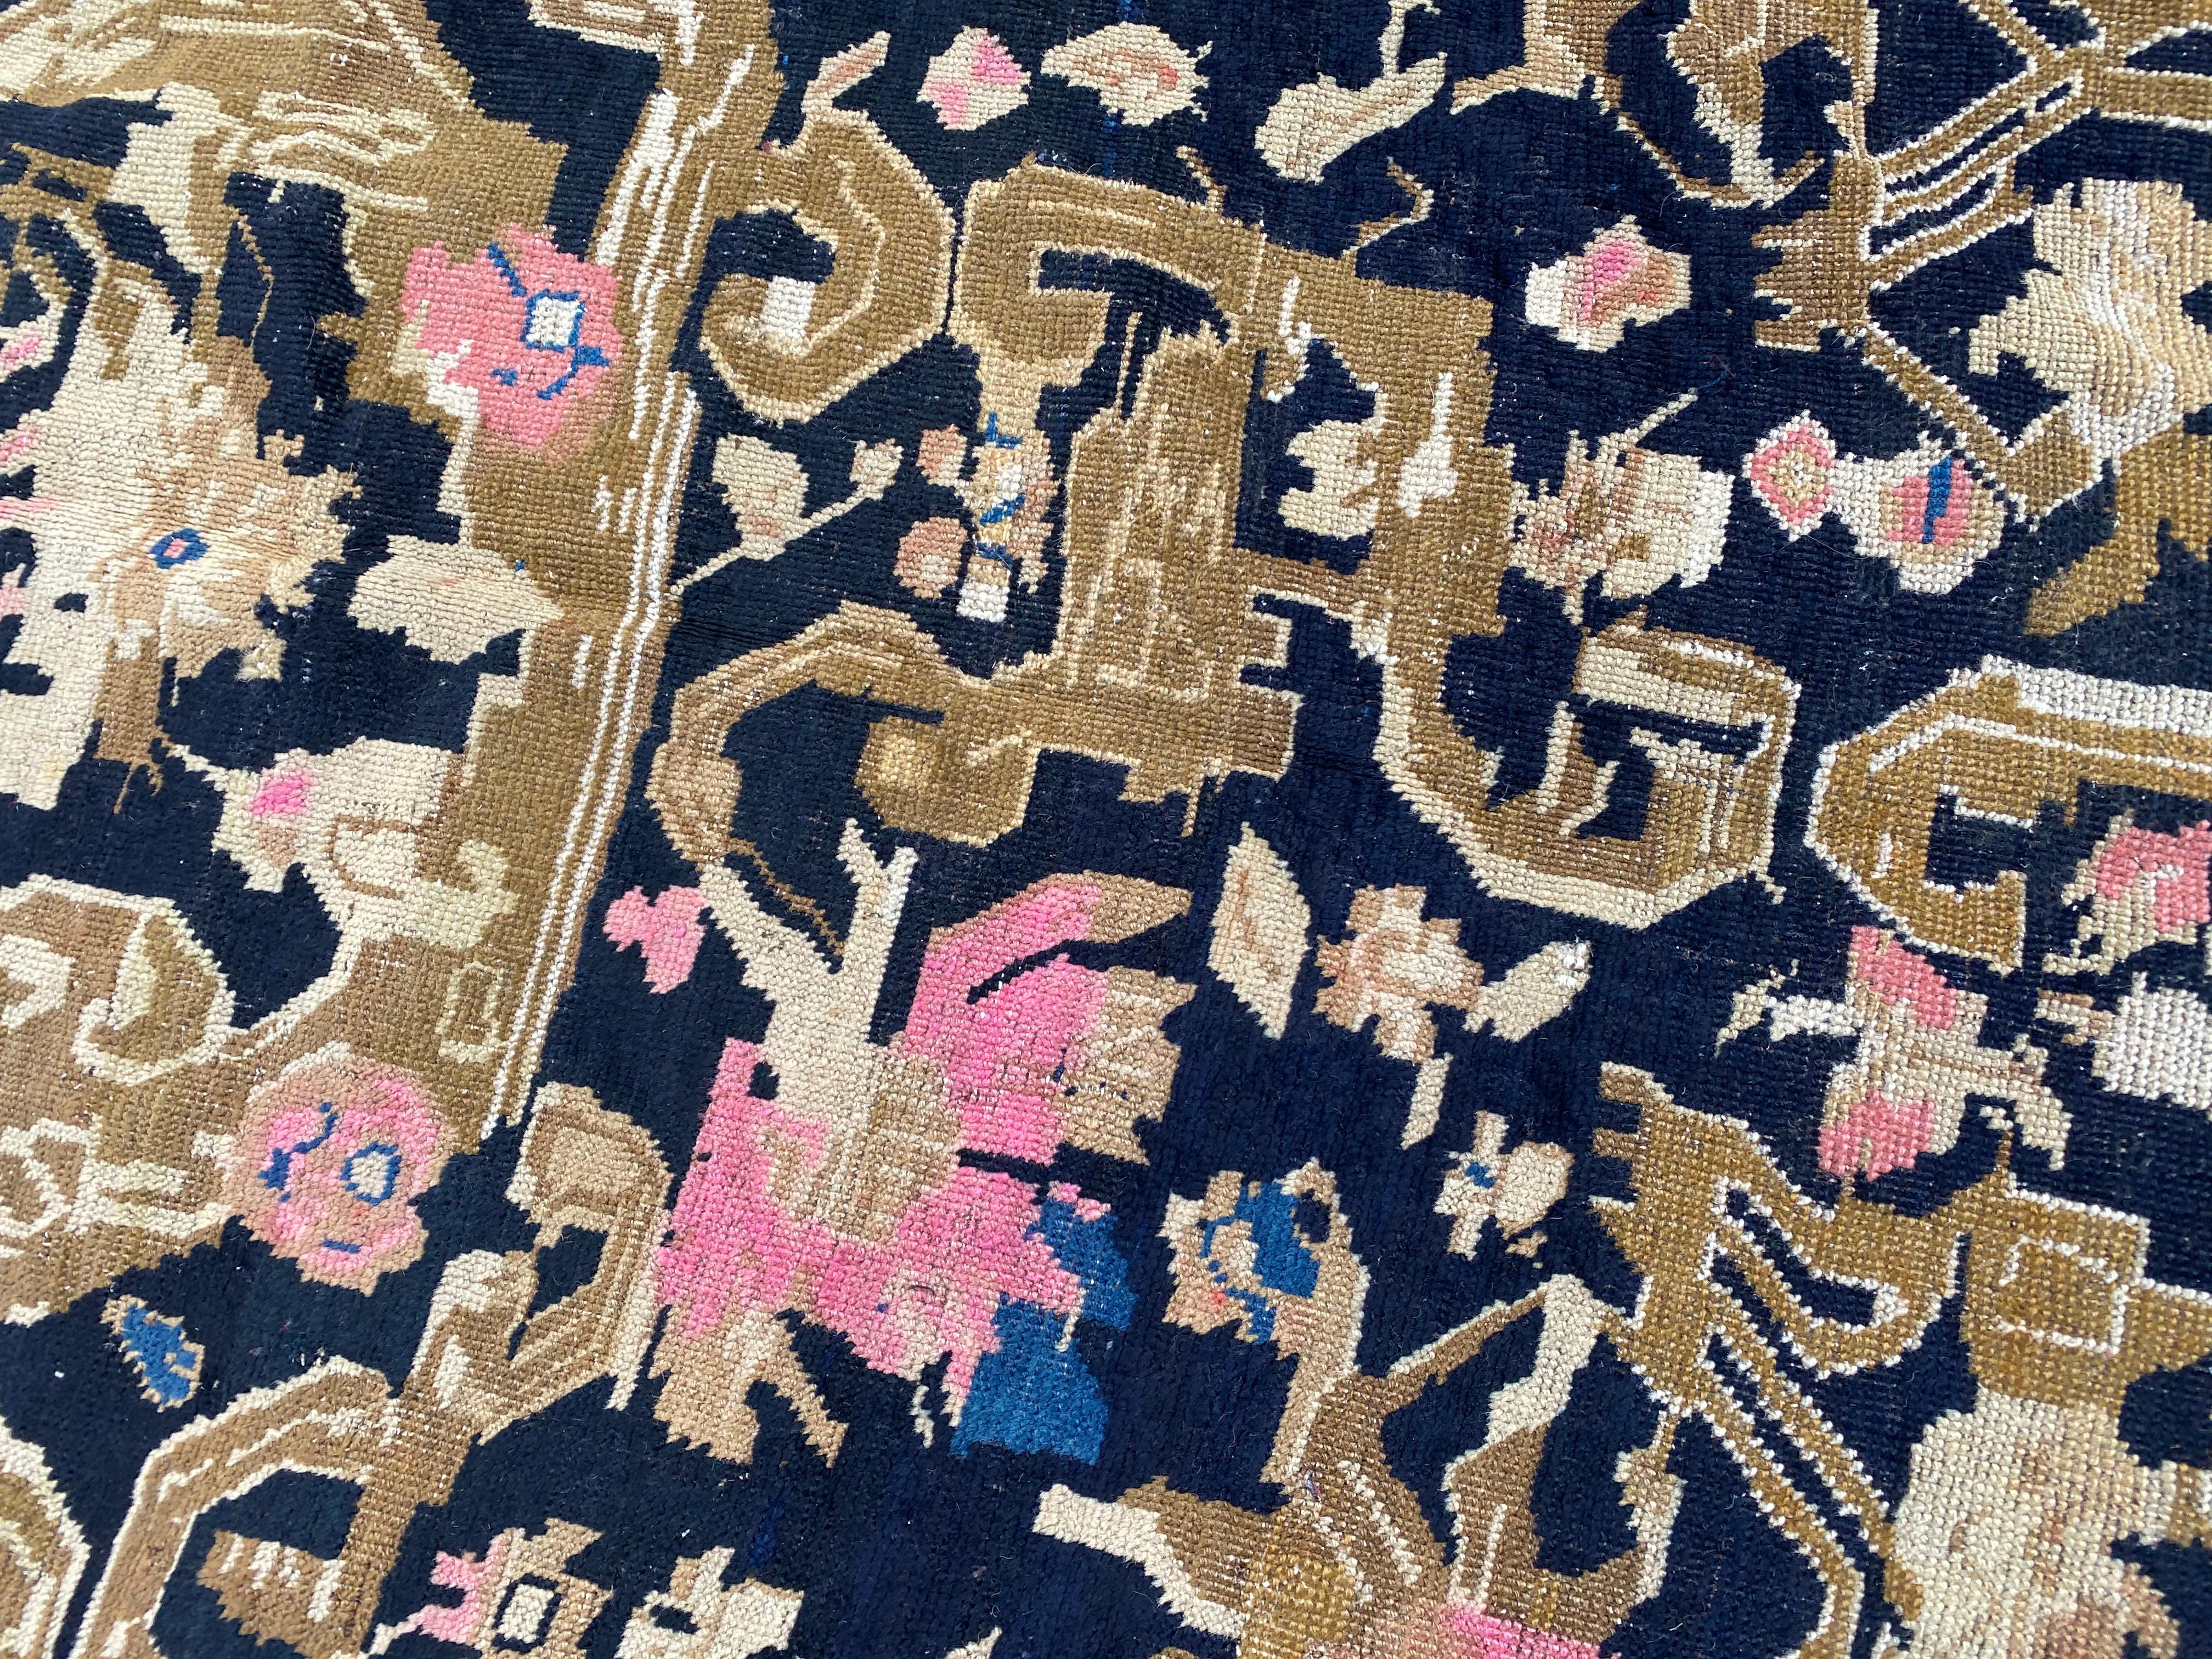 Entdecken Sie die zeitlose Eleganz eines charmanten Karabagh-Teppichs aus dem frühen 20. Jahrhundert. Tauchen Sie ein in das exquisite dekorative Design und die leuchtenden Farben - von dem satten dunkelbraunen Hintergrund, der mit stilisierten